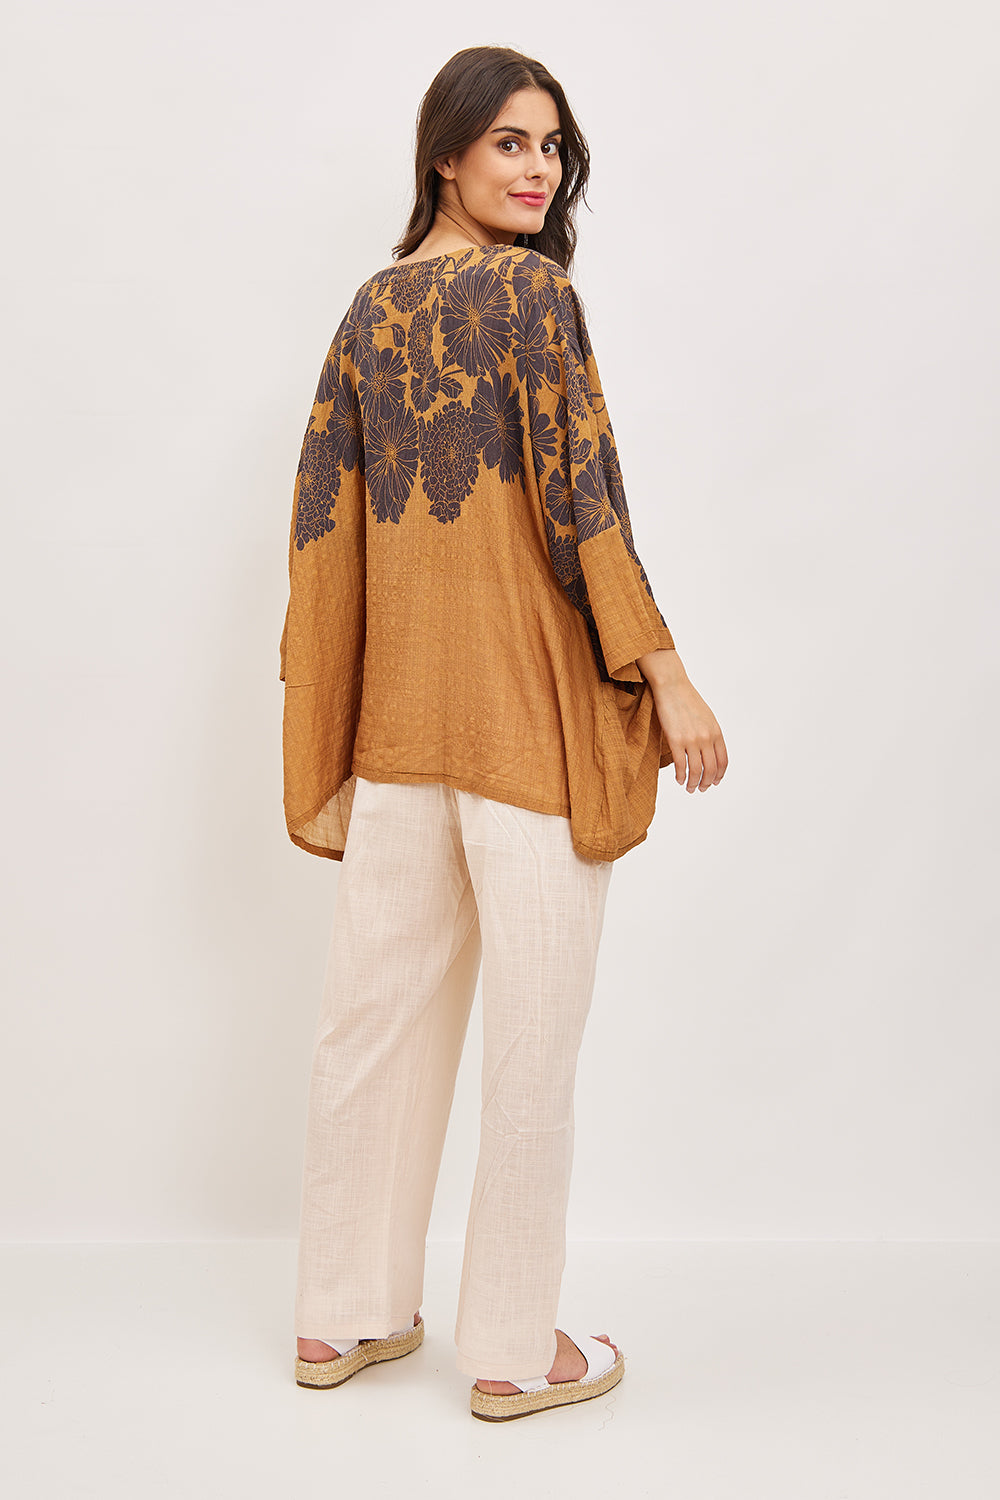 Blusa com bolso e estampa floral inspirada na dália